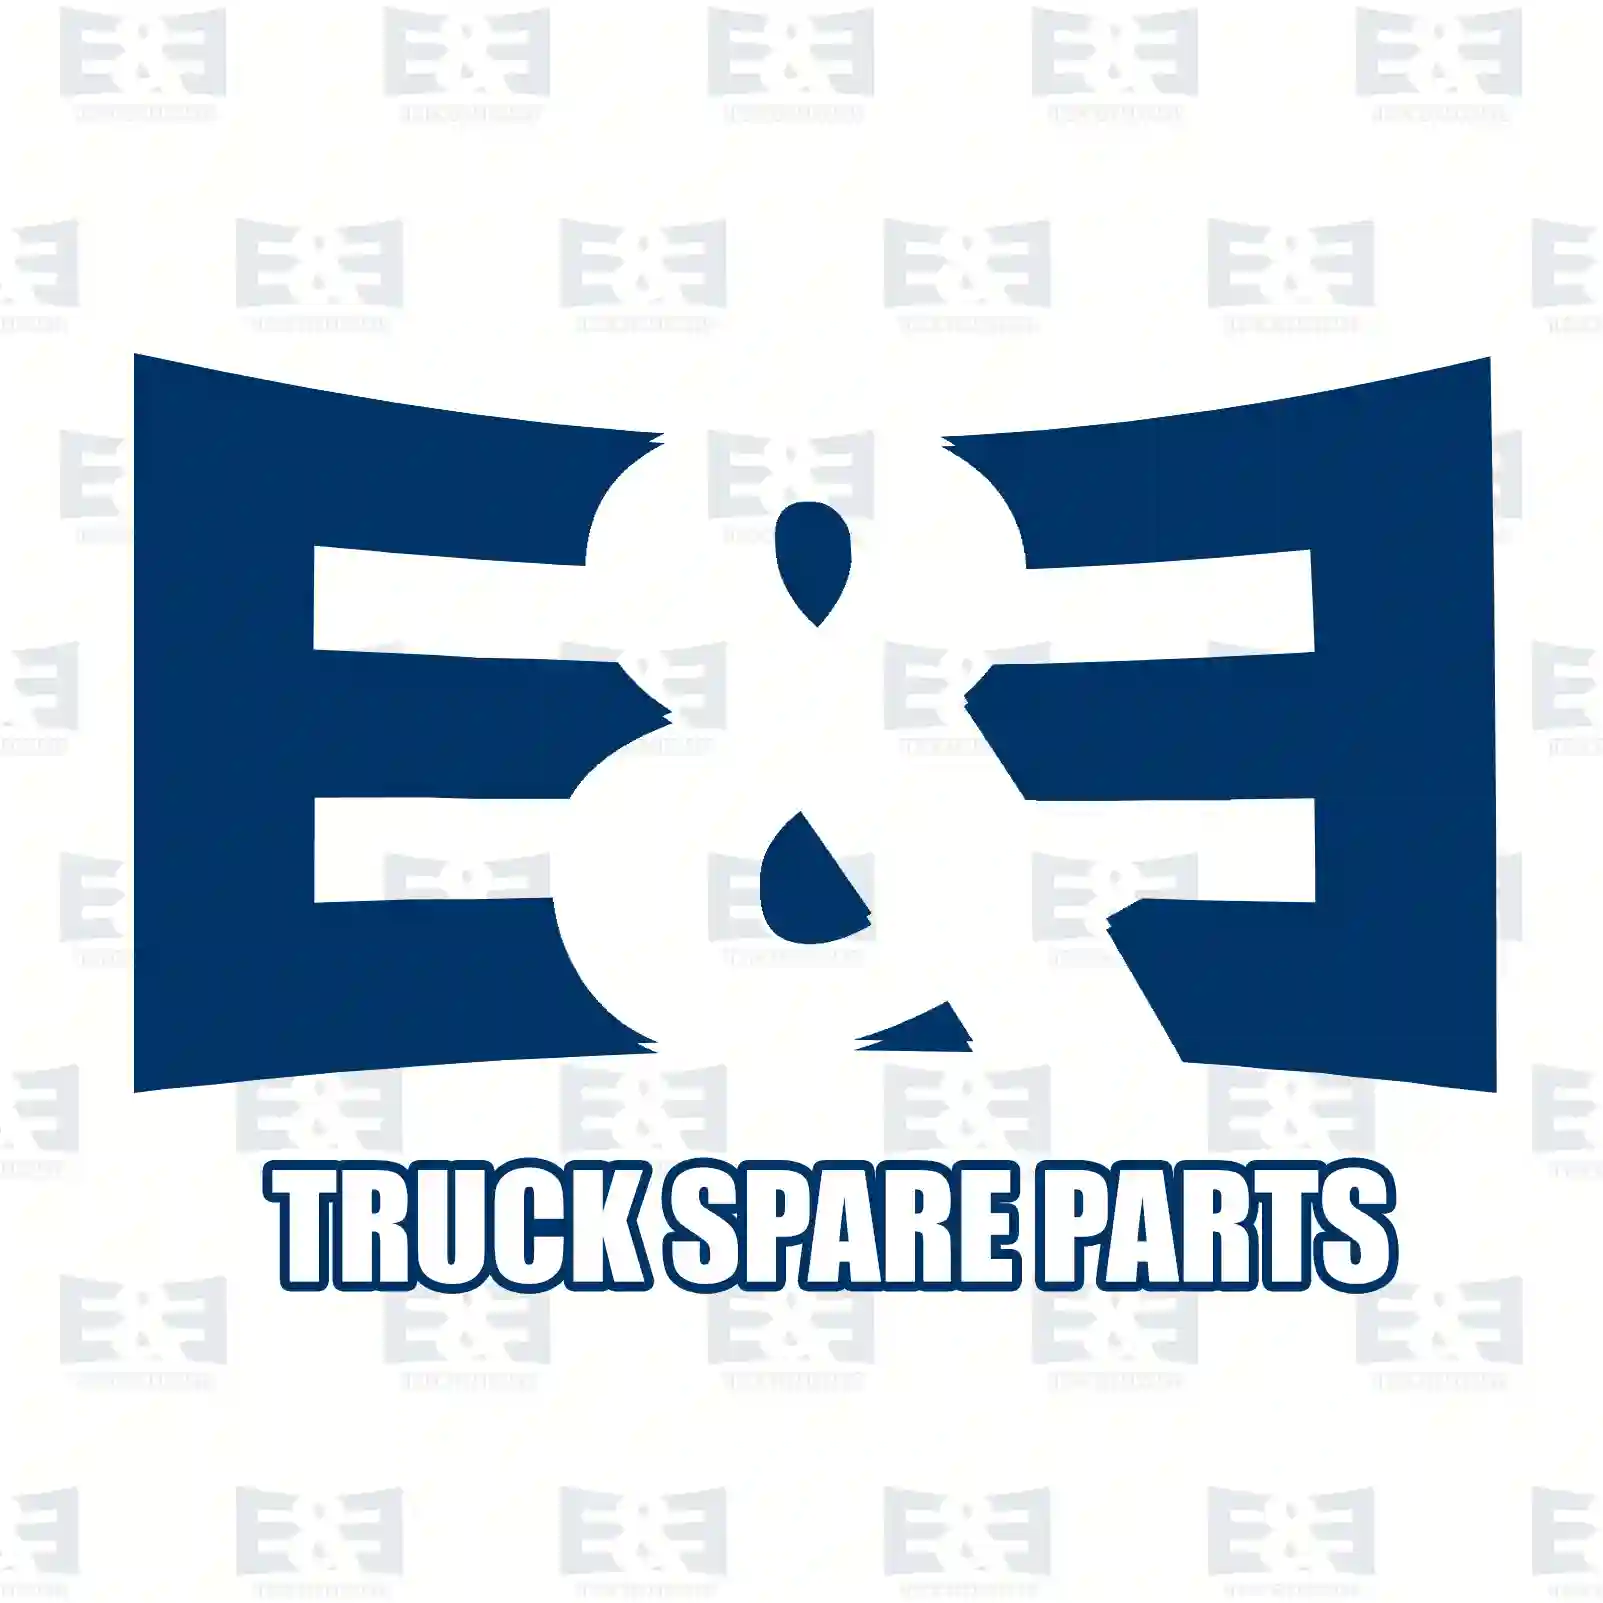 Front grill, lower, 2E2280046, 1375567, ZG60809-0008 ||  2E2280046 E&E Truck Spare Parts | Truck Spare Parts, Auotomotive Spare Parts Front grill, lower, 2E2280046, 1375567, ZG60809-0008 ||  2E2280046 E&E Truck Spare Parts | Truck Spare Parts, Auotomotive Spare Parts